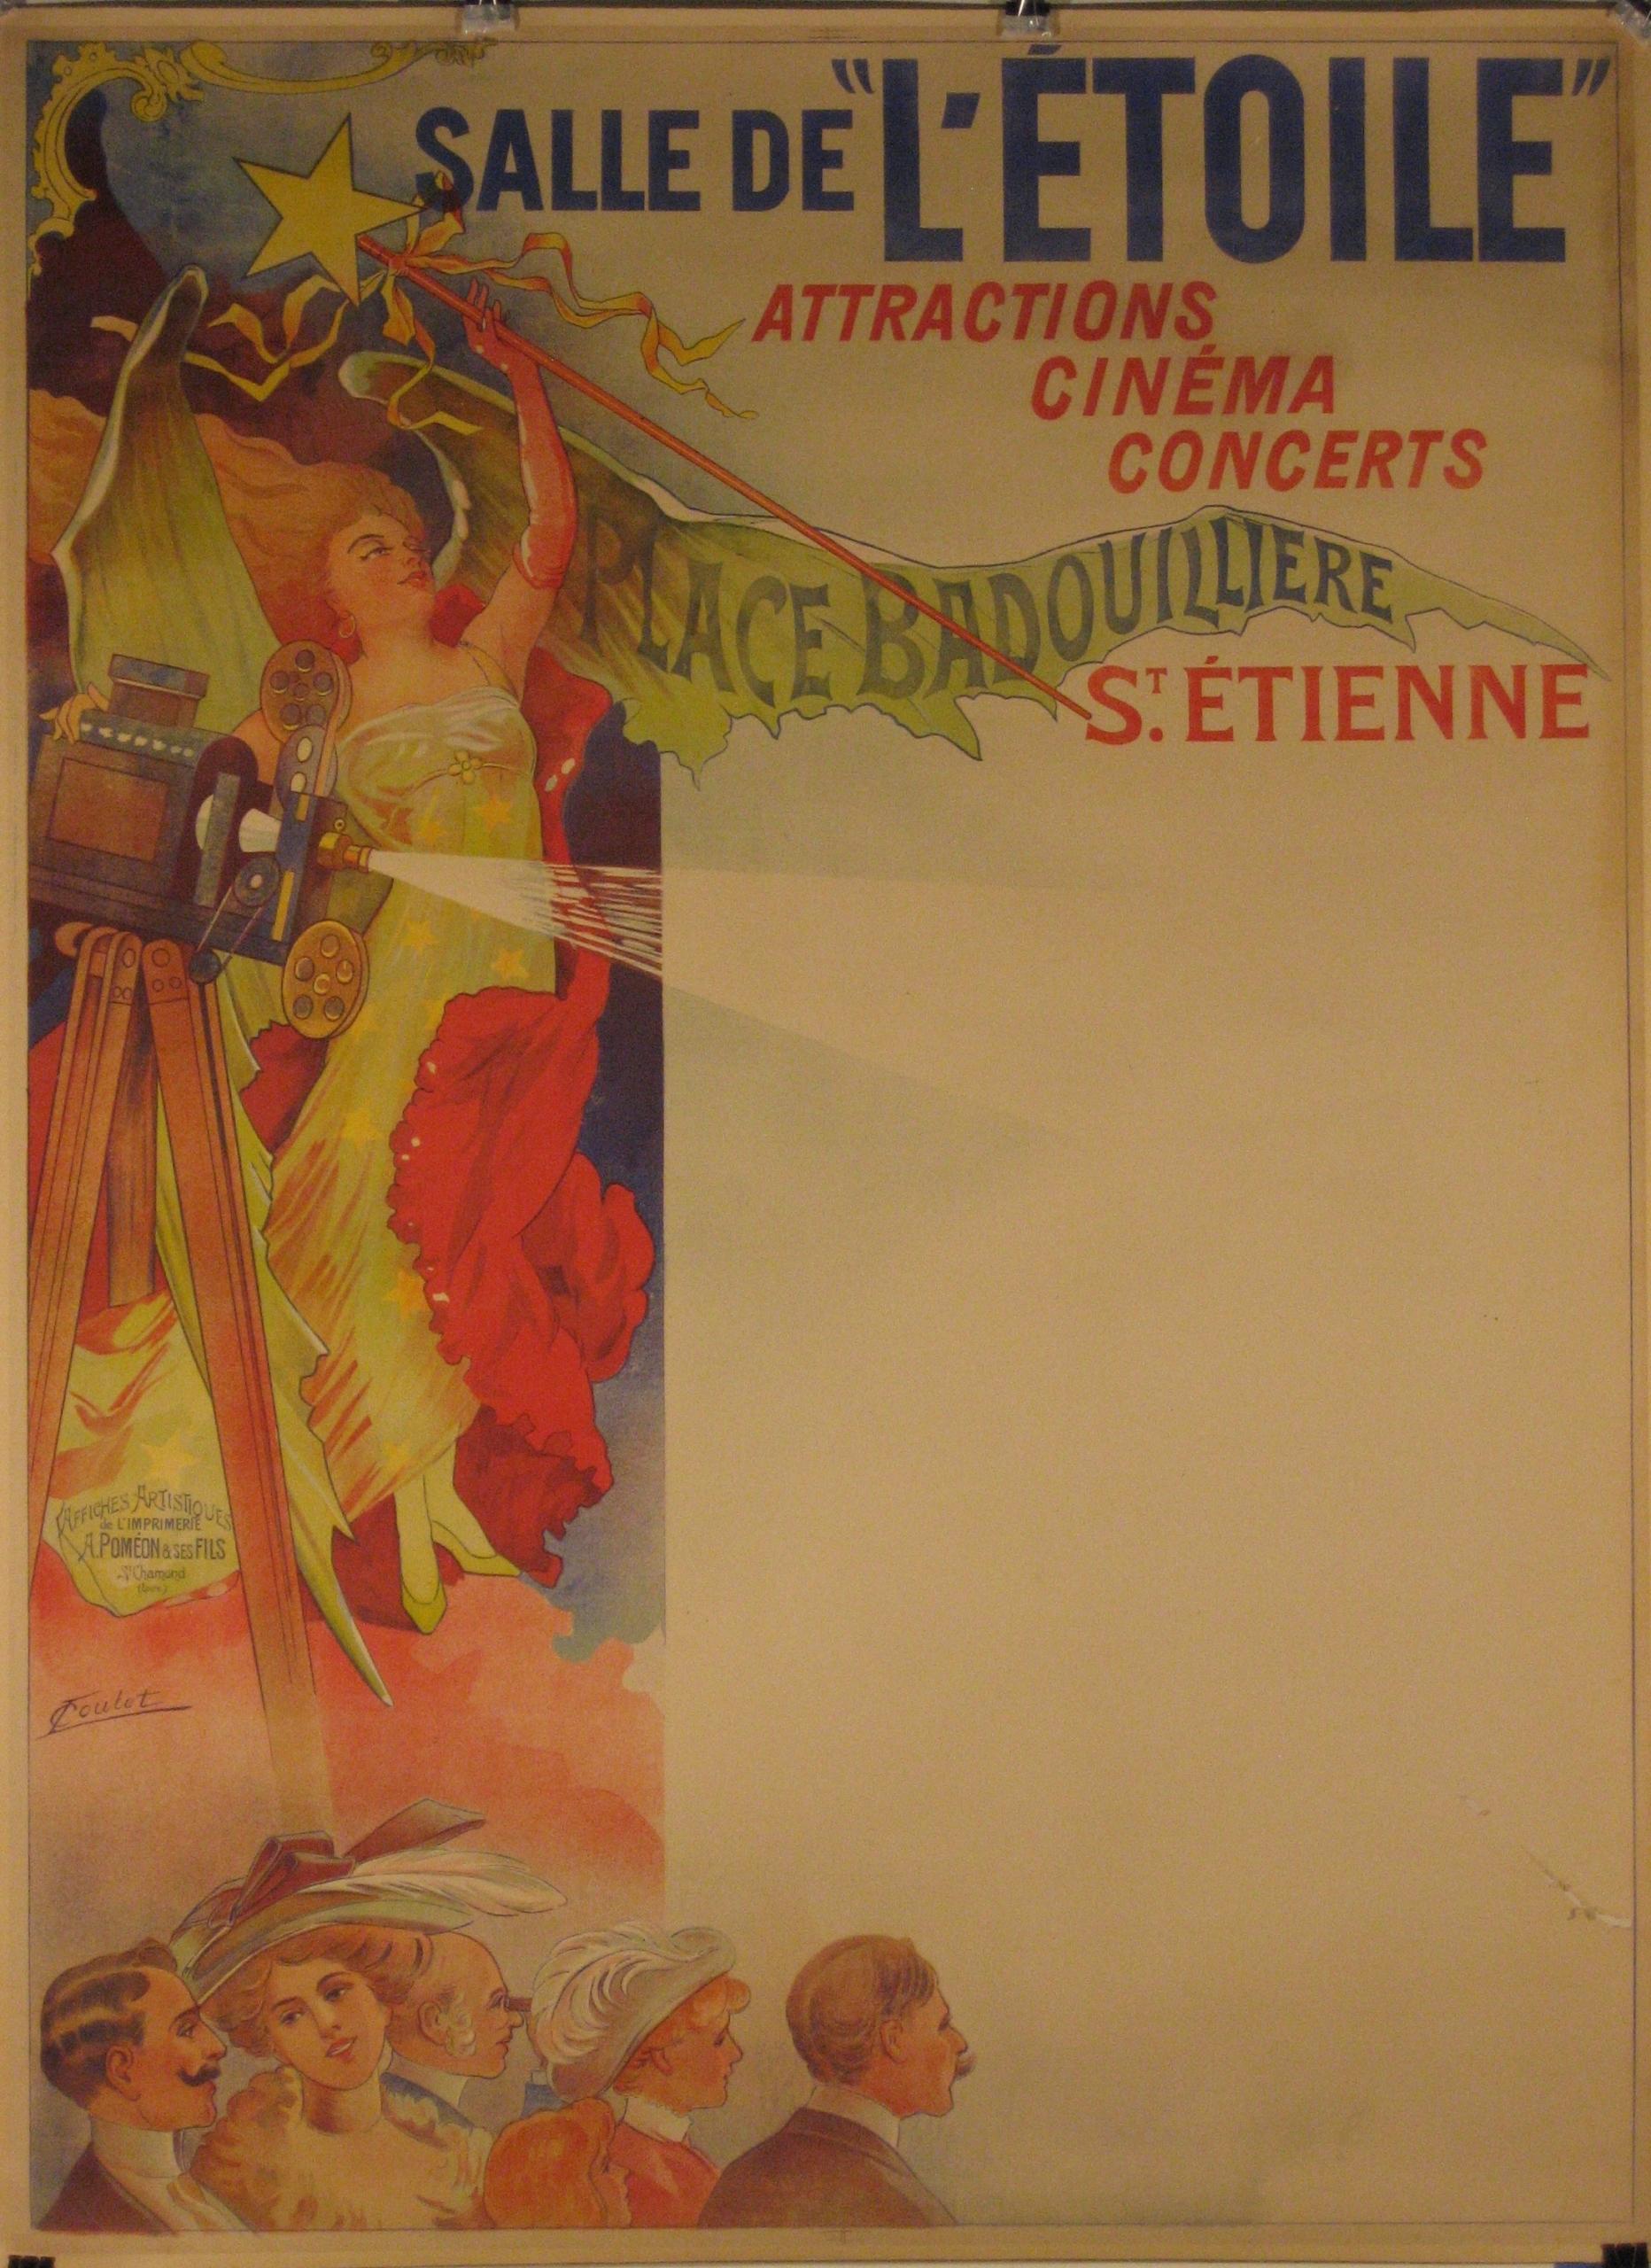 Künstler: Leon Gabriel L. Coulet   (Französisch, 1873 - ?)

Entstehungszeit: um 1910

Medium: Original Steinlithographie Vintage Poster

Größe: 47